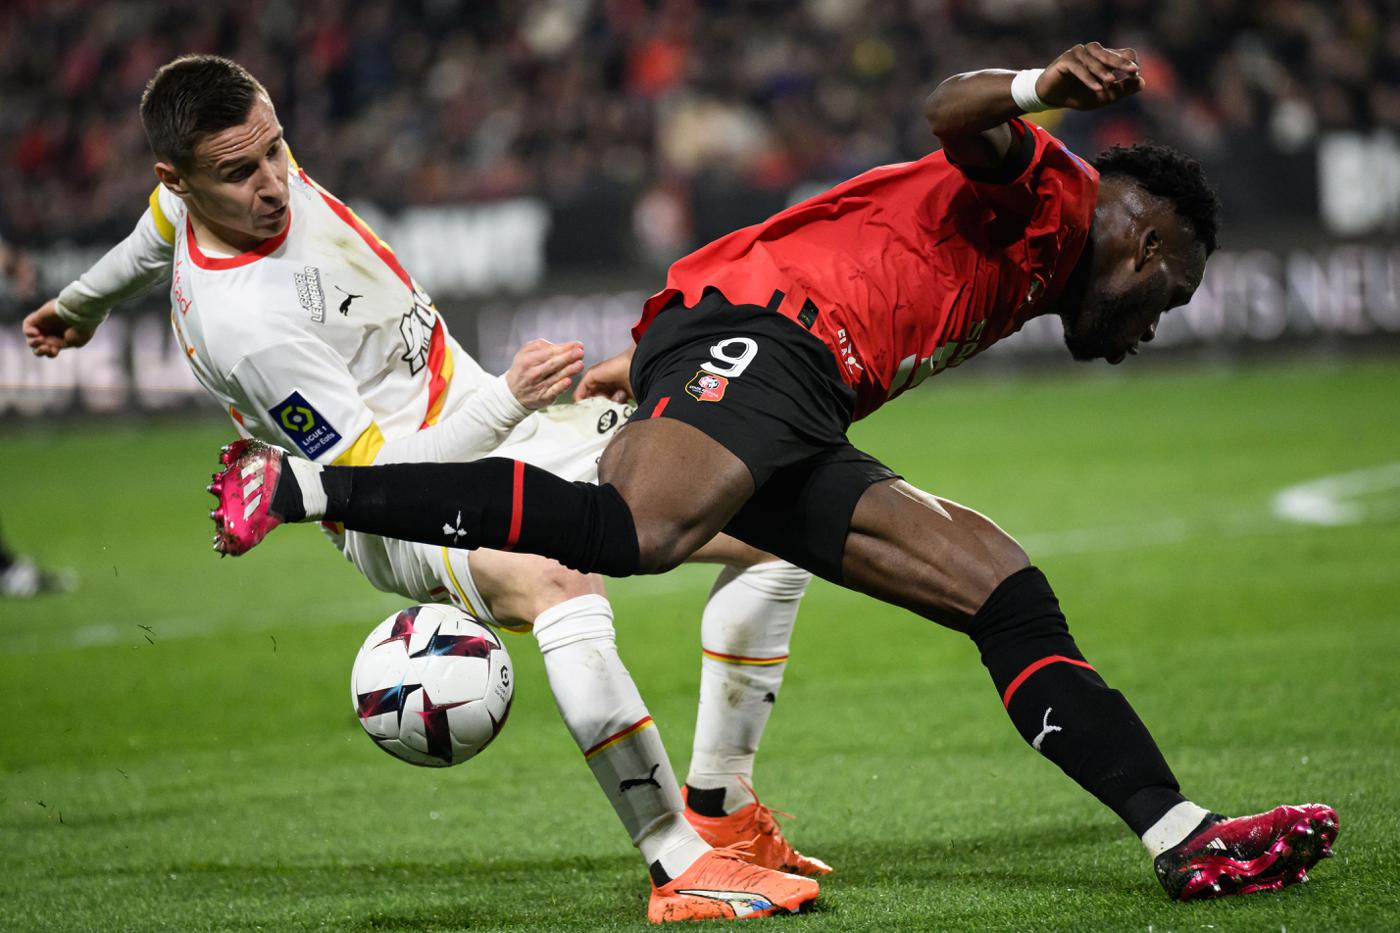 Rennes - Linse - 0:1. Französische Meisterschaft, 29. Runde. Spielbericht, Statistiken